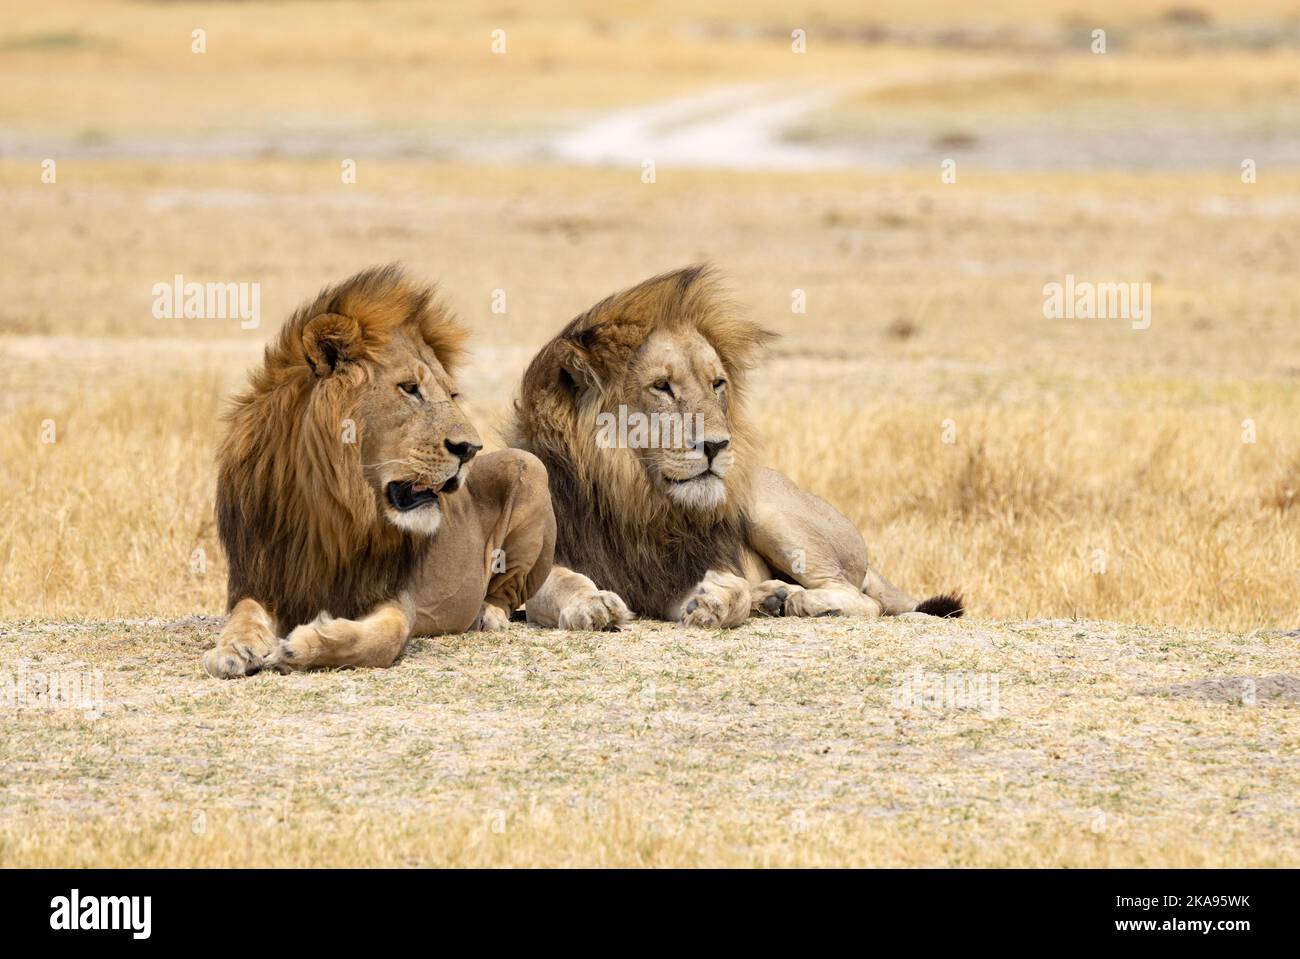 Deux lions mâles, adulte, Panthera Leo; Moremi Game Reserve, Botswana Africa. Cinq grands prédateurs. Faune africaine Banque D'Images